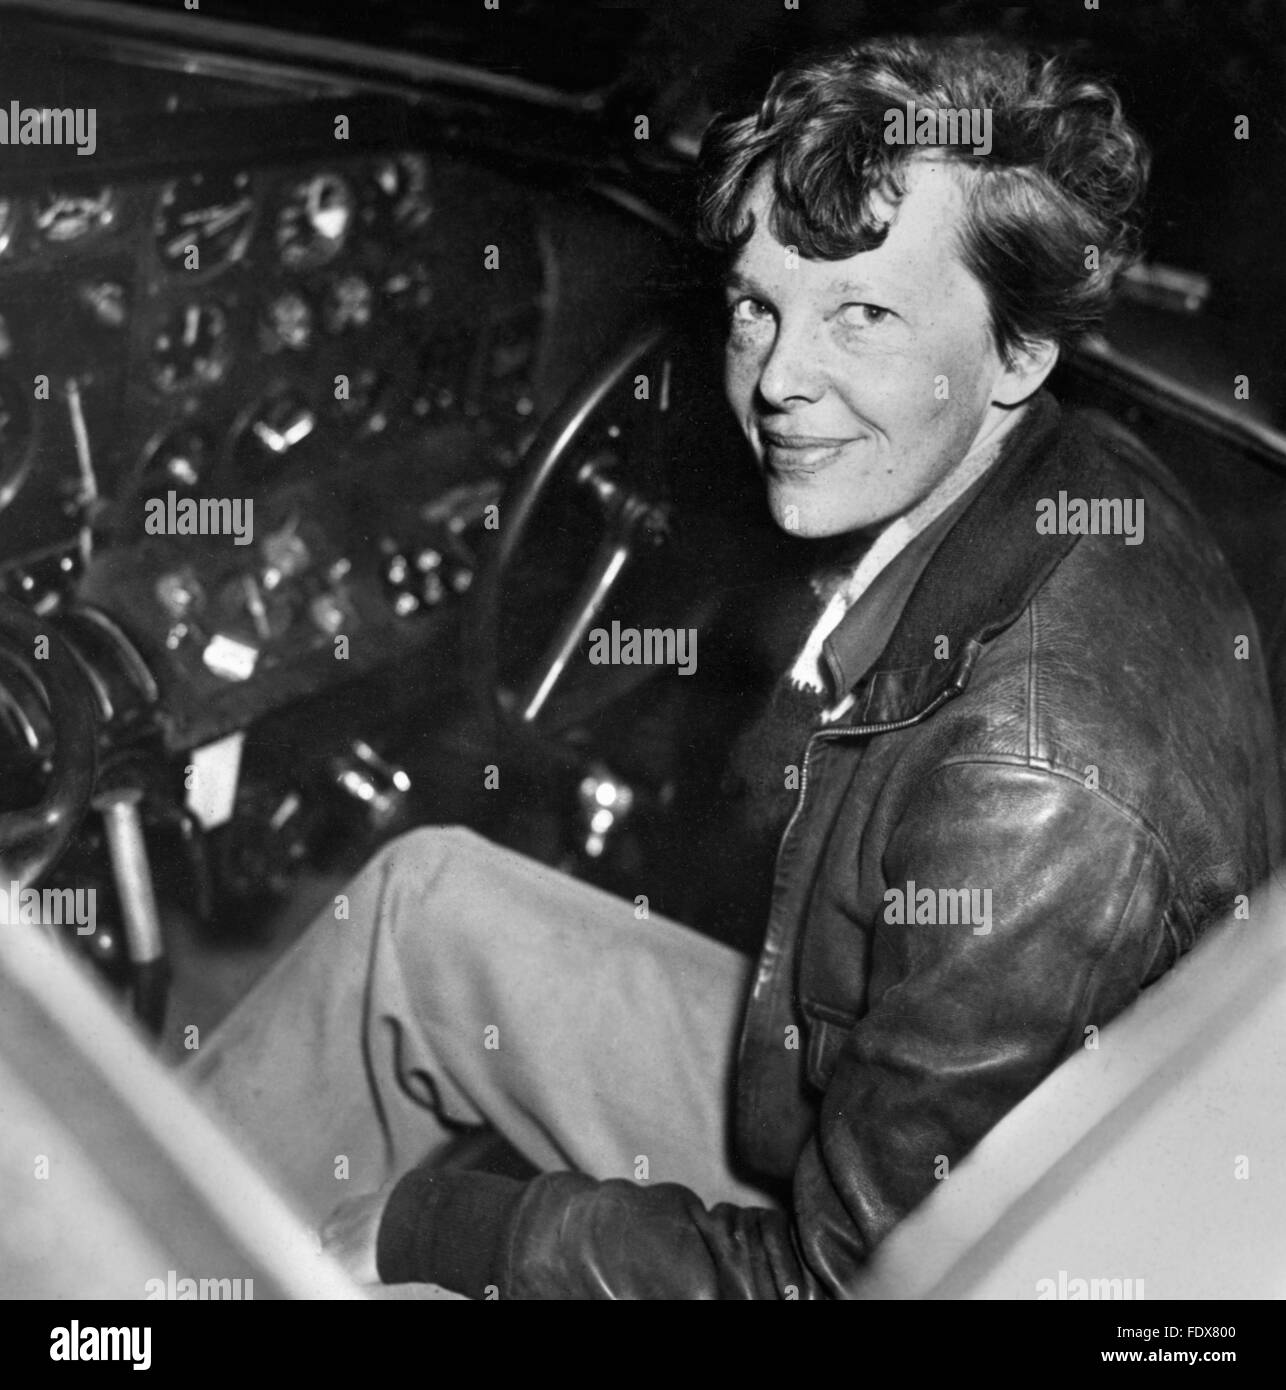 Amelia Earhart, le célèbre aviateur, ch. 1937 Banque D'Images